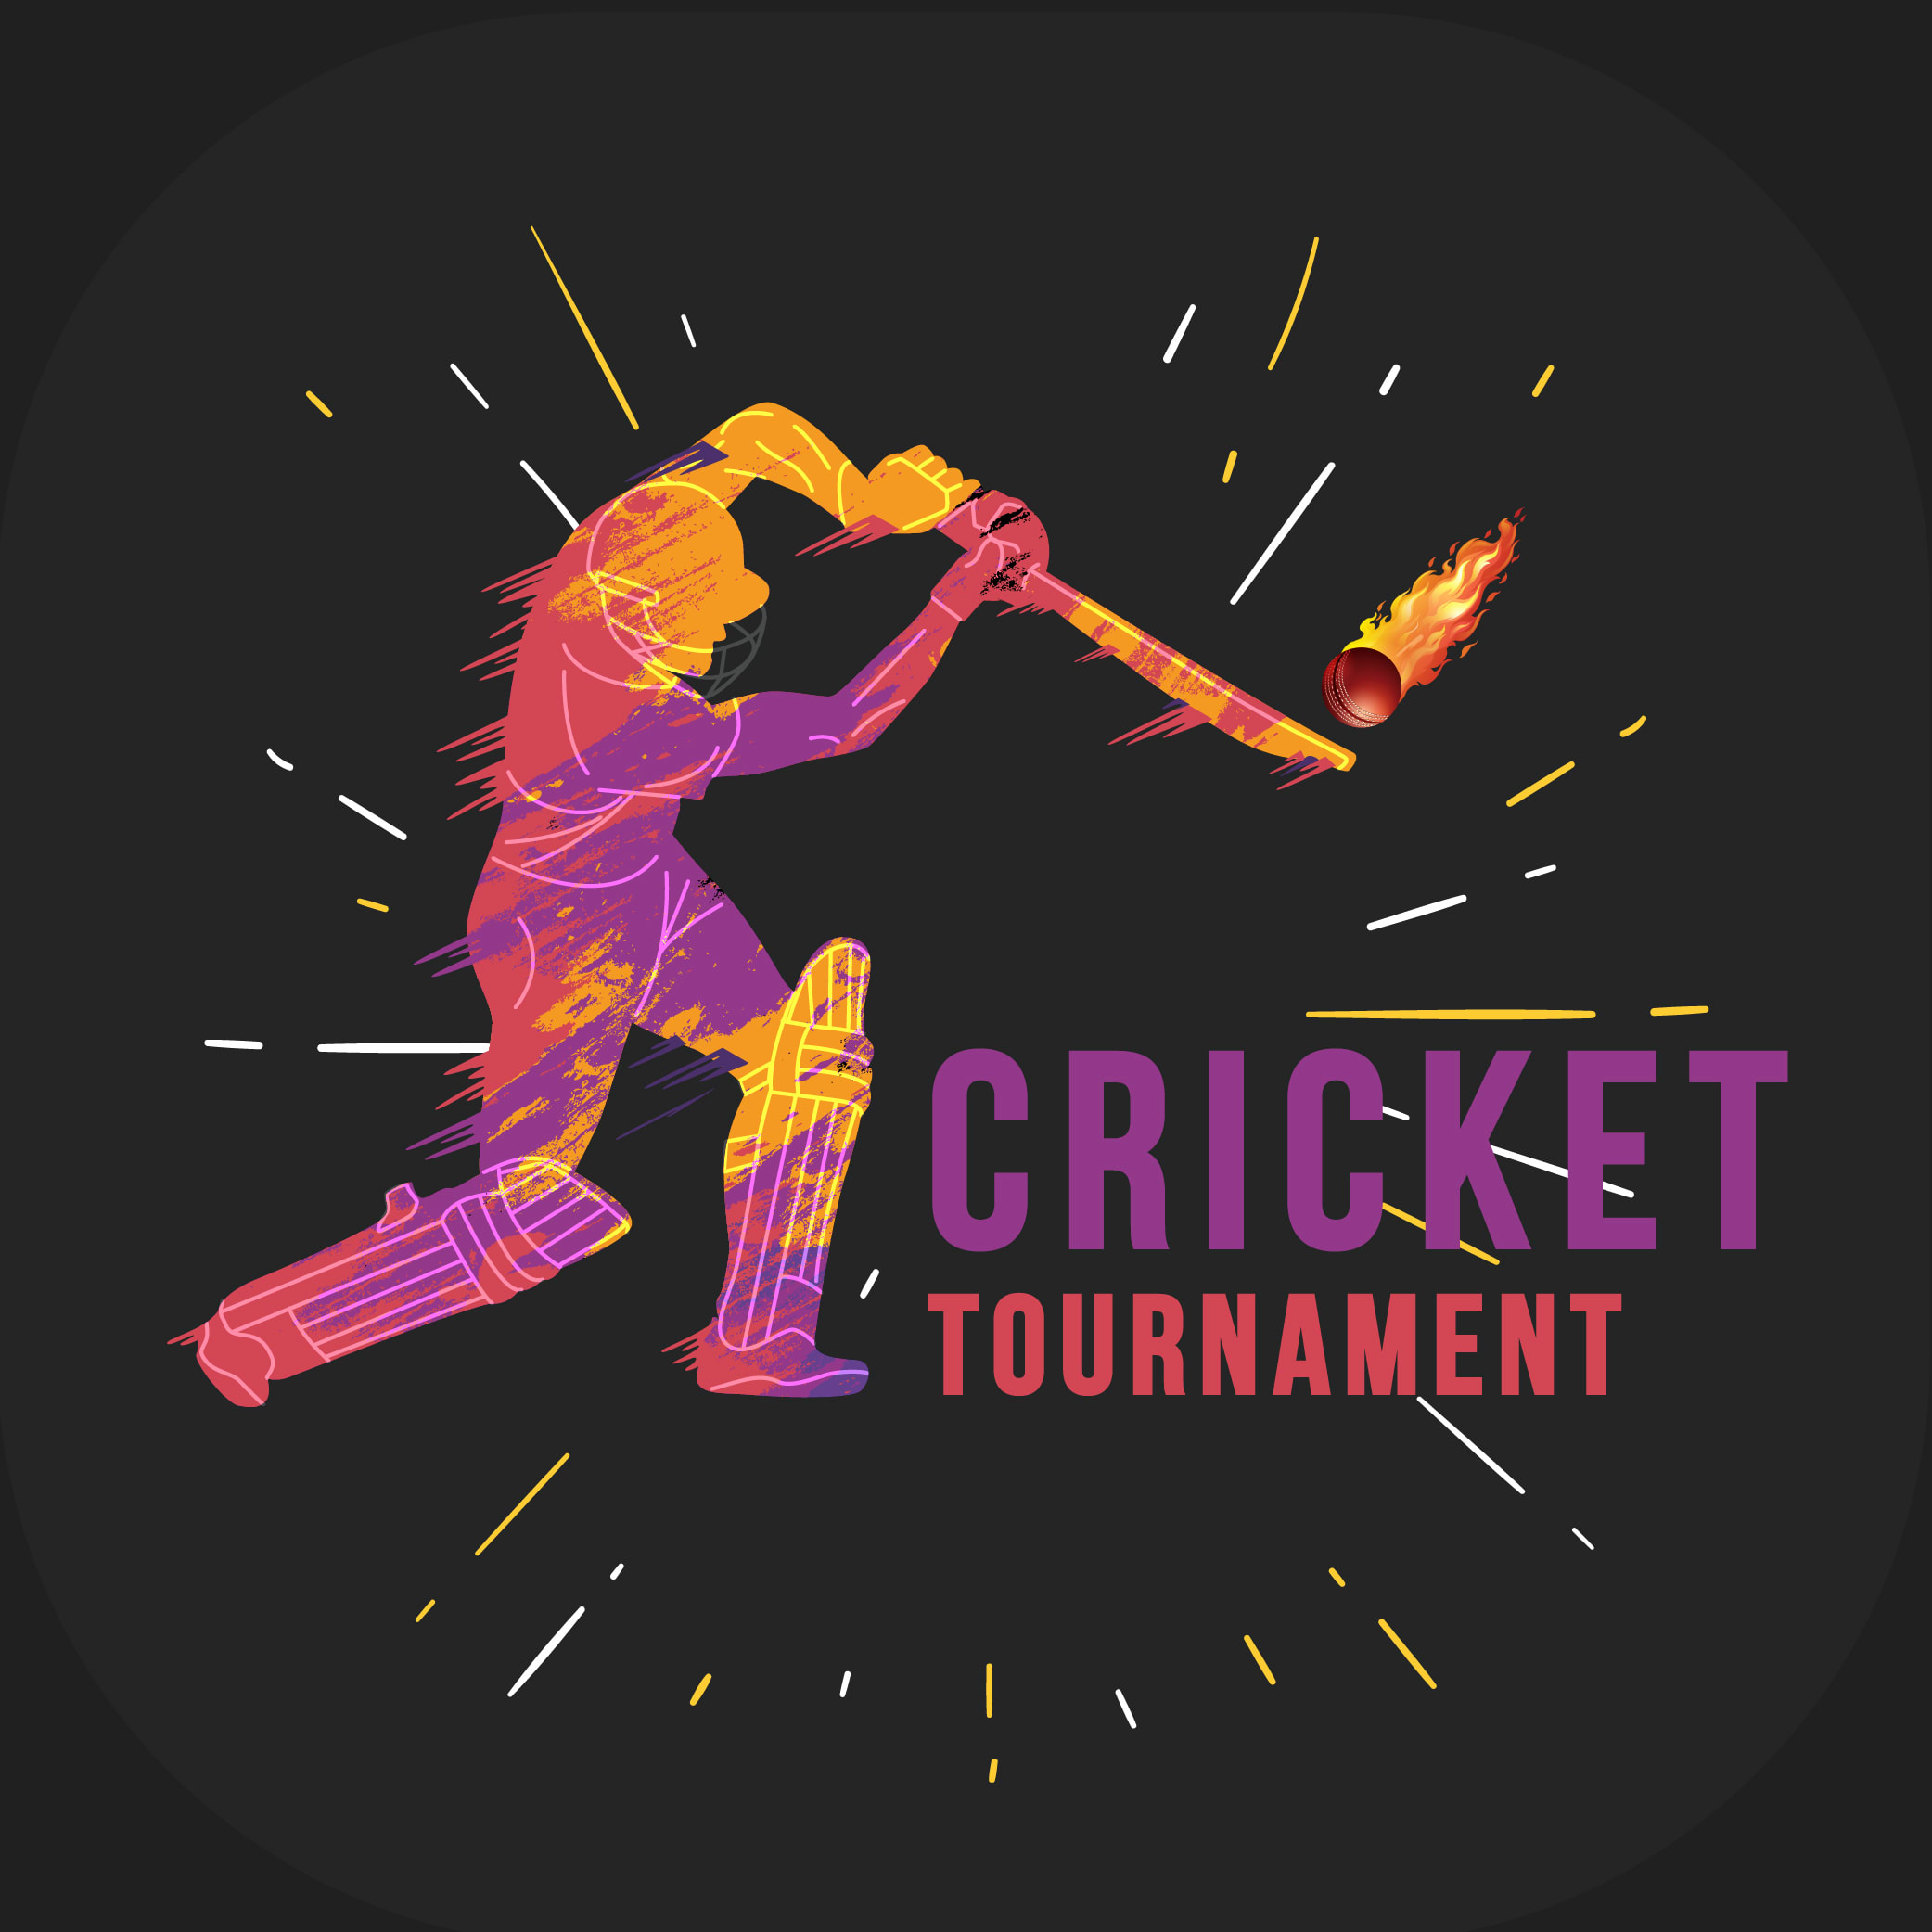 Cricket logo HD wallpapers | Pxfuel